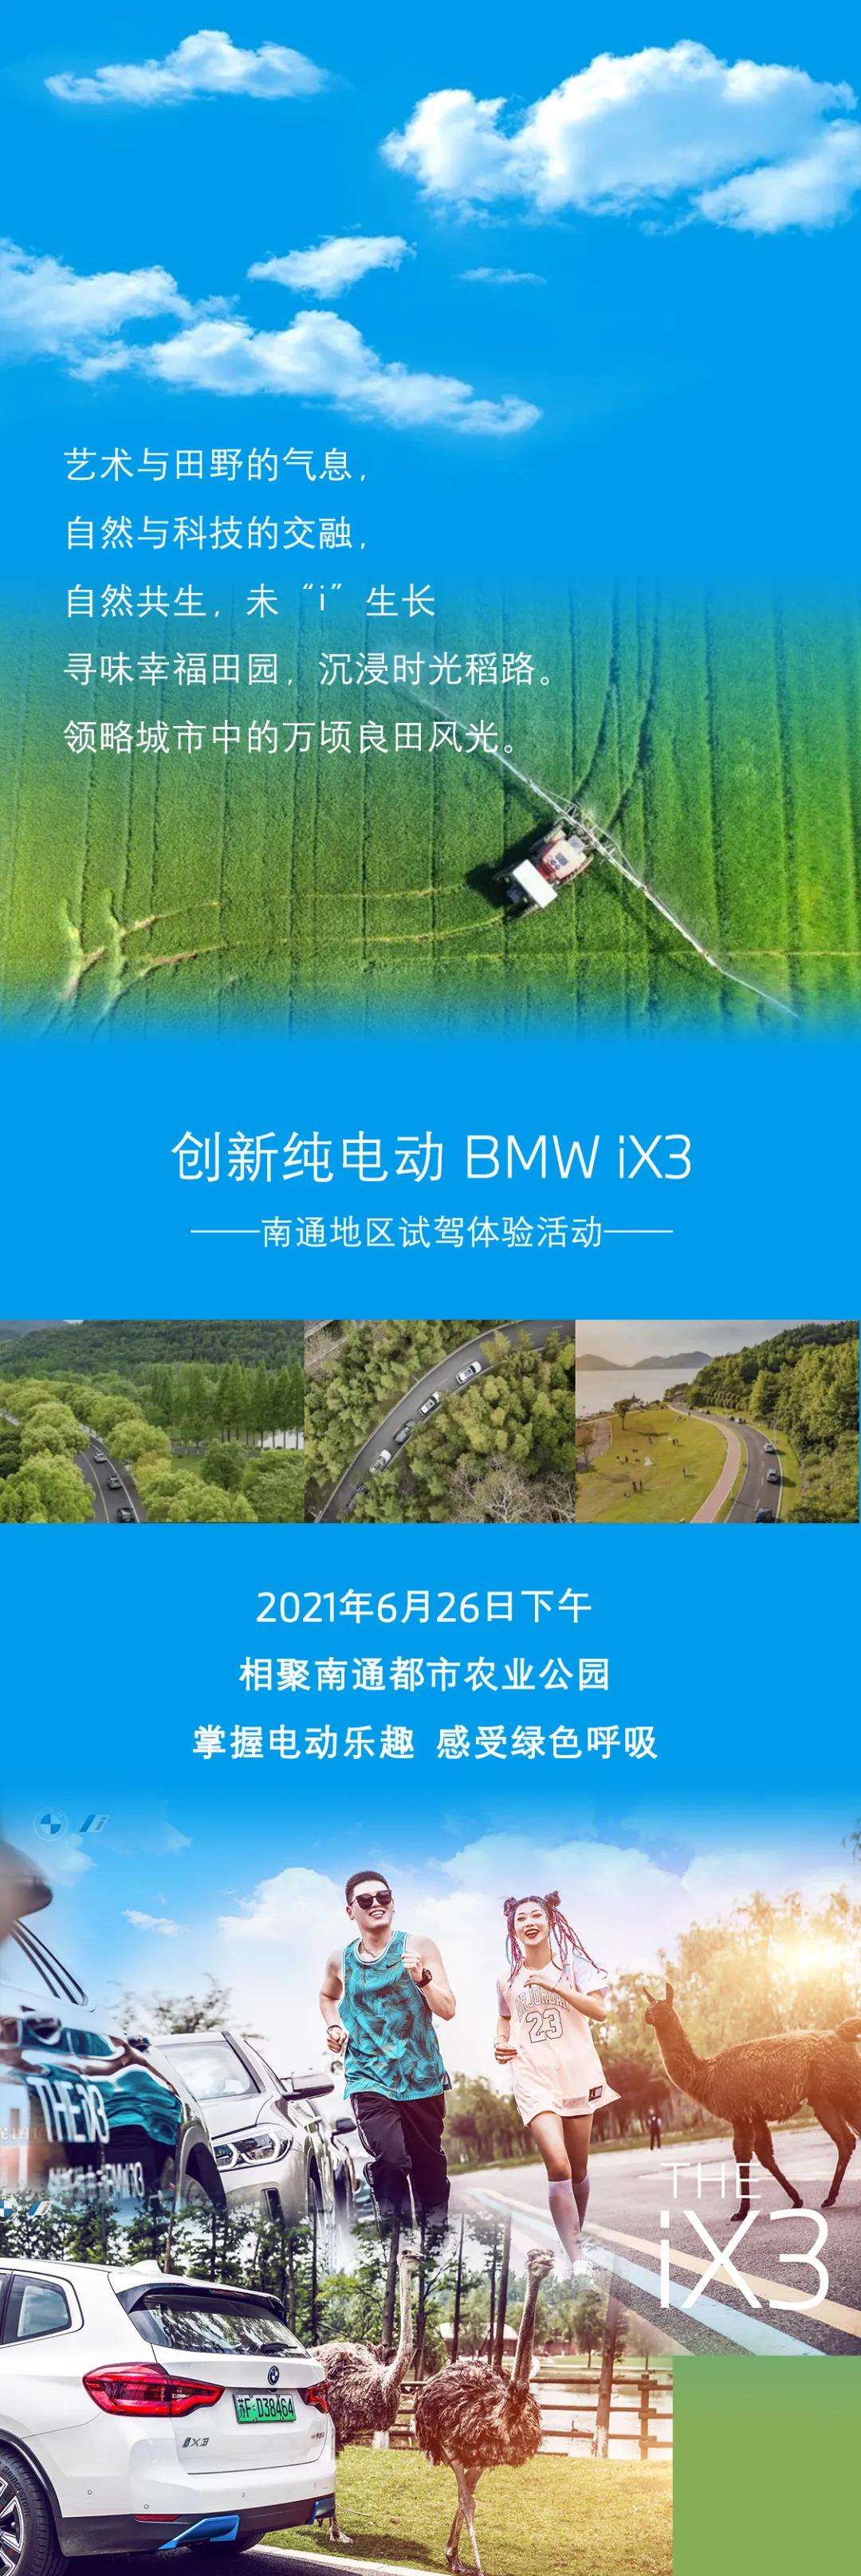 活动招募 创新纯电动BMW iX3南通地区生态探索之旅